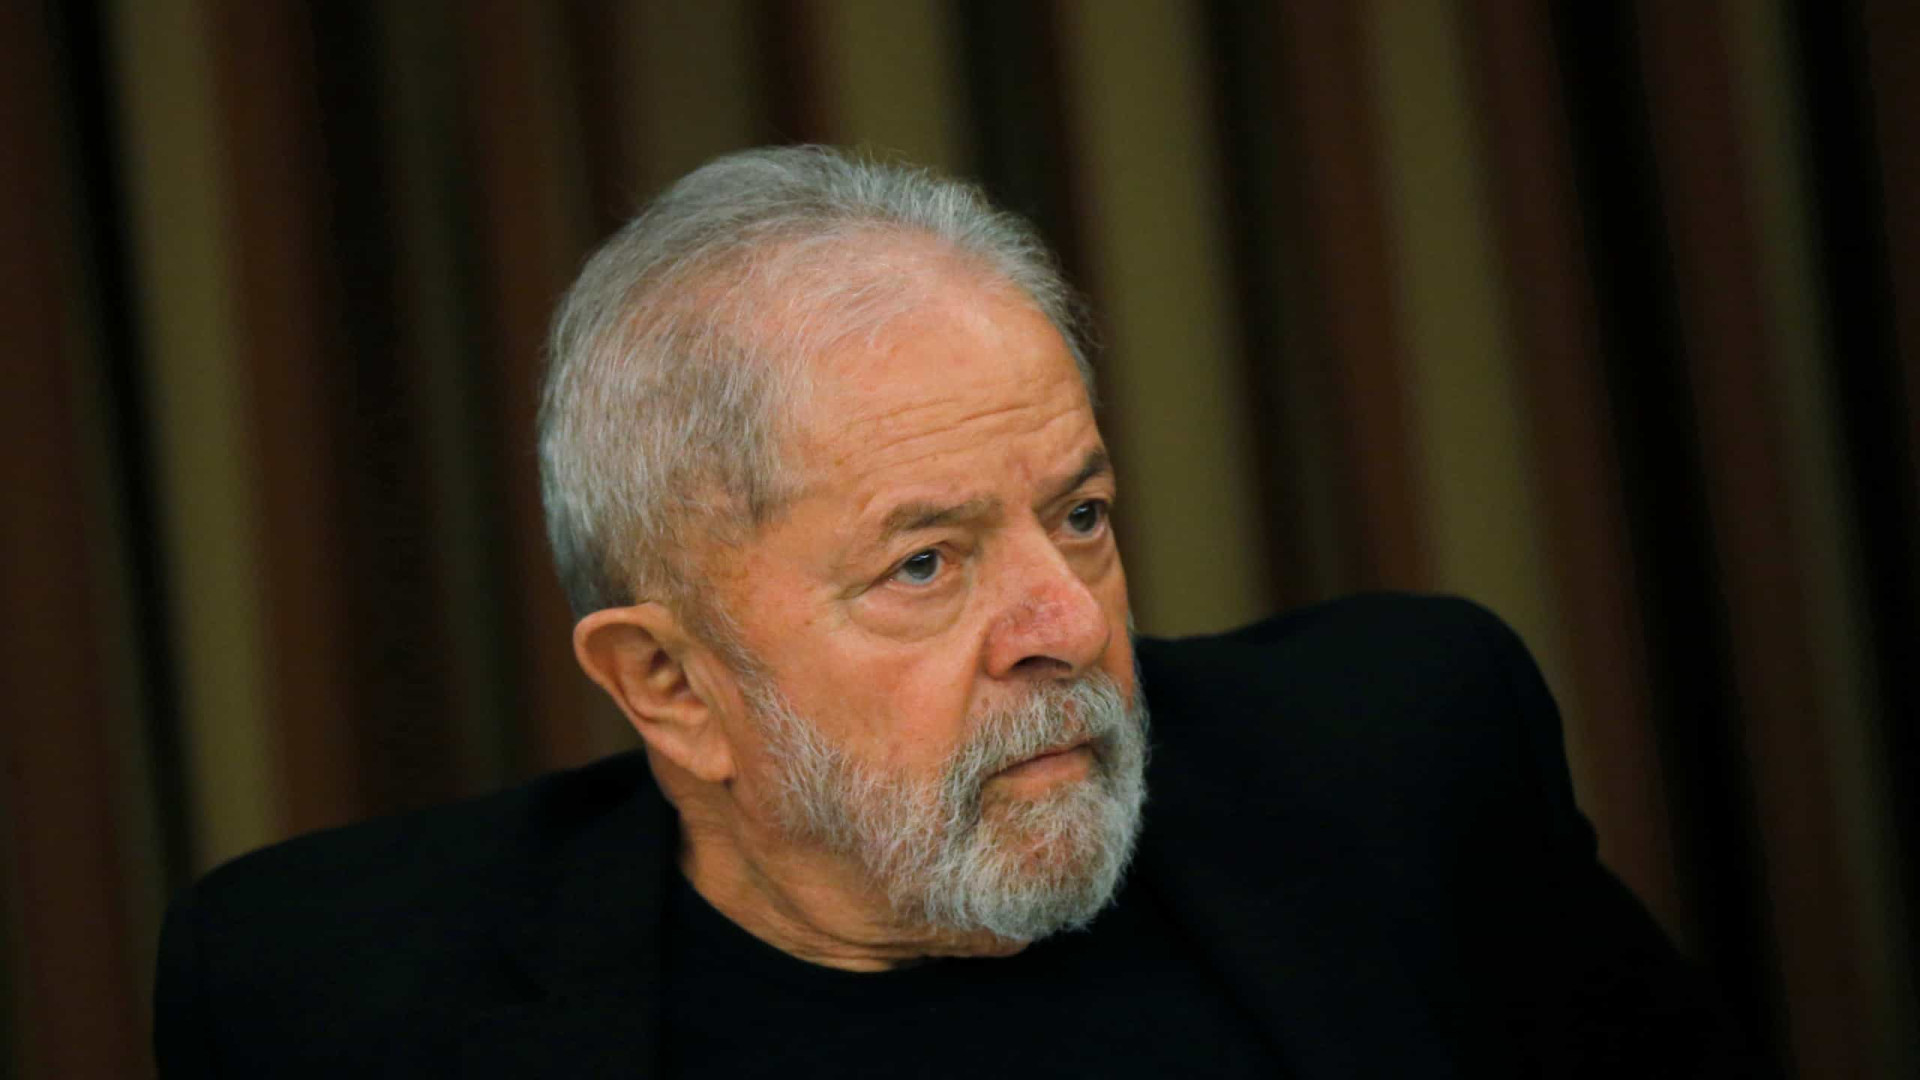 Única forma da economia se recuperar é governo investir, diz Lula